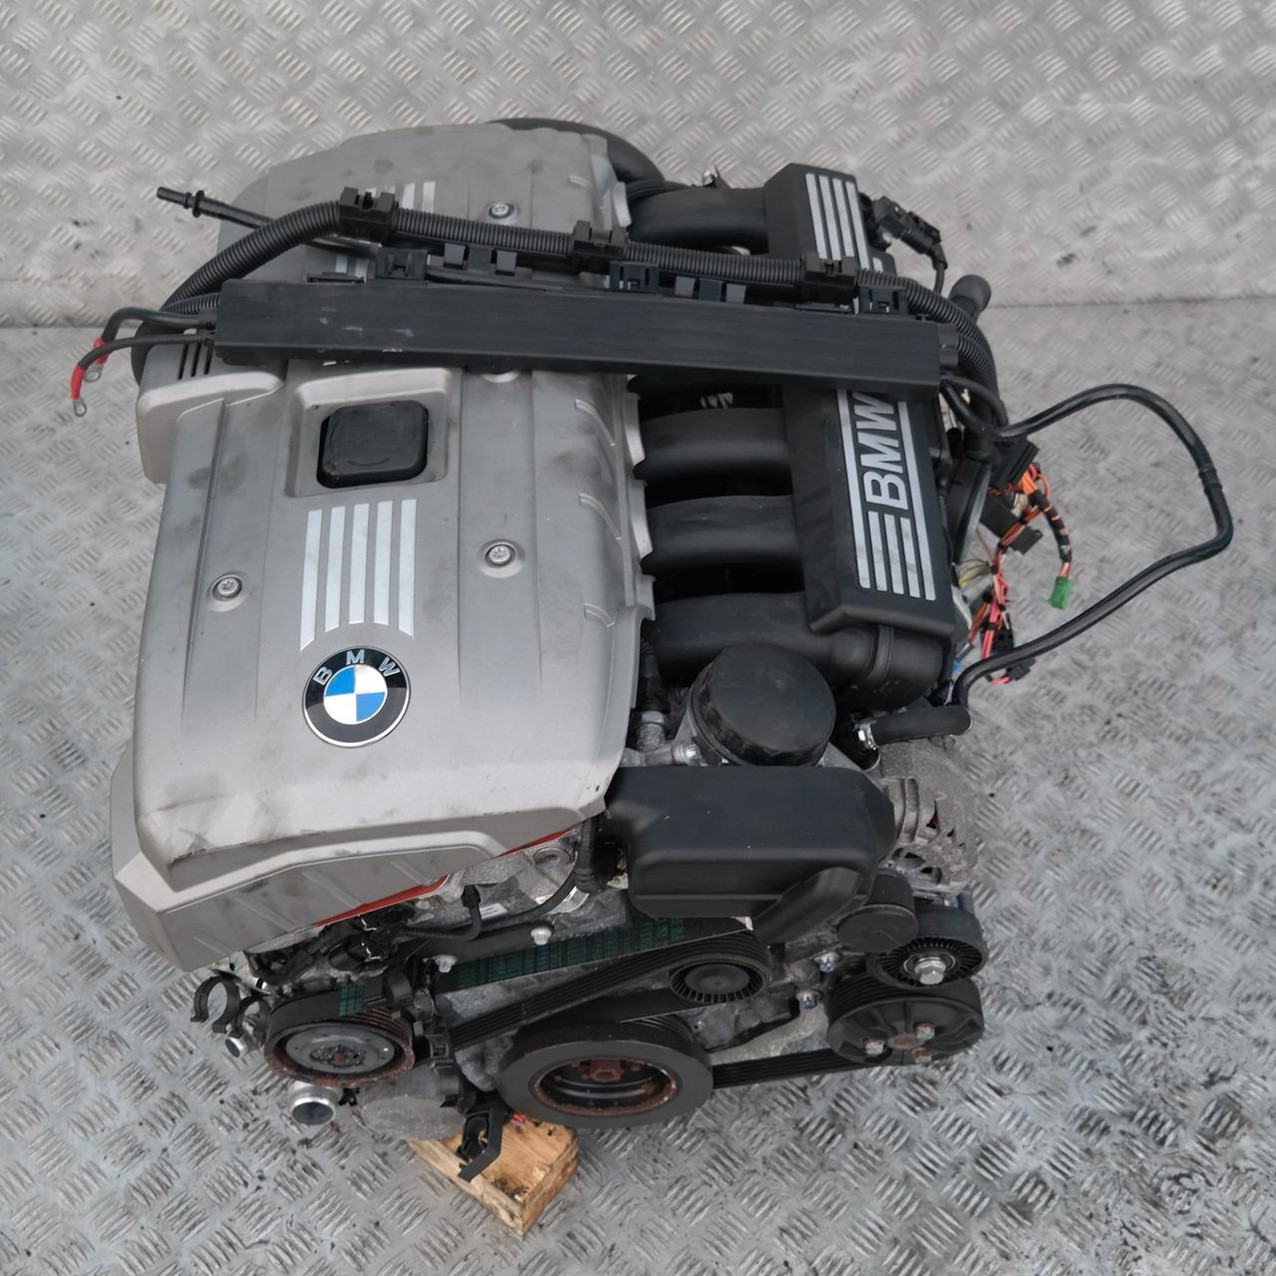 Е60 n52b25. Мотор БМВ n52. BMW e90 2.5 n52 мотор. Мотор БМВ 3.5. БМВ n52b30.